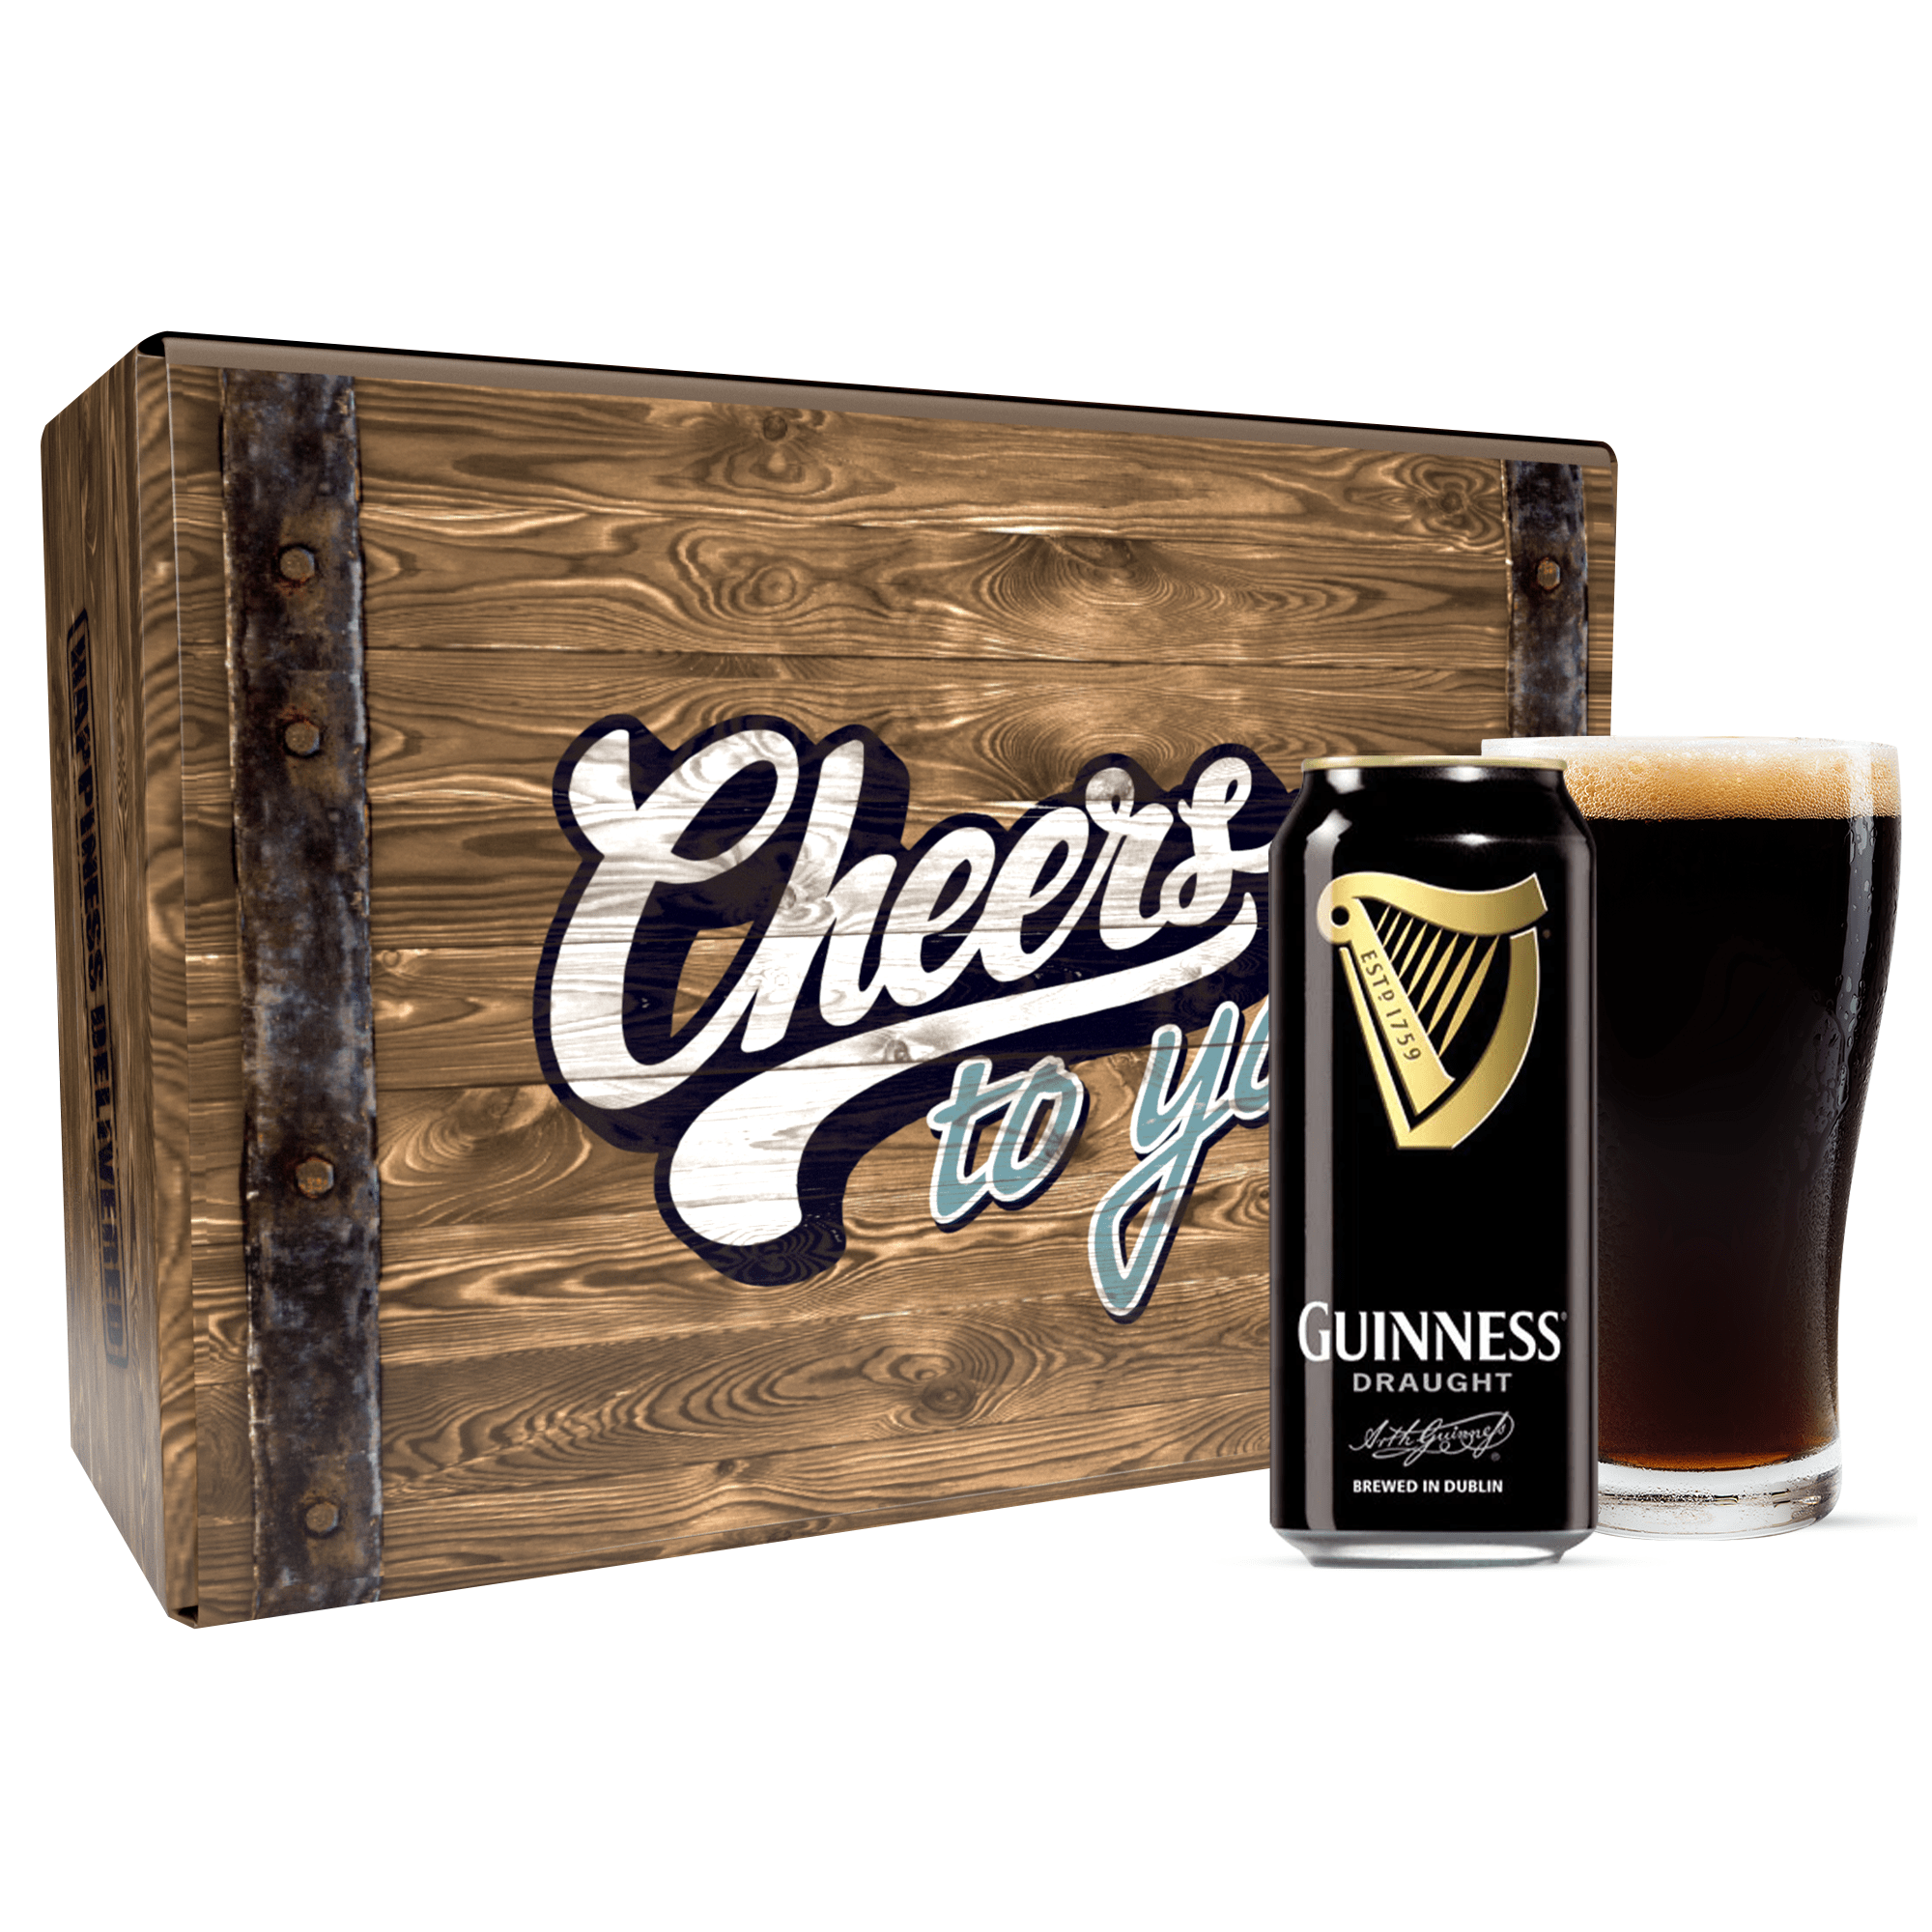 Cerveza Guinness Draught